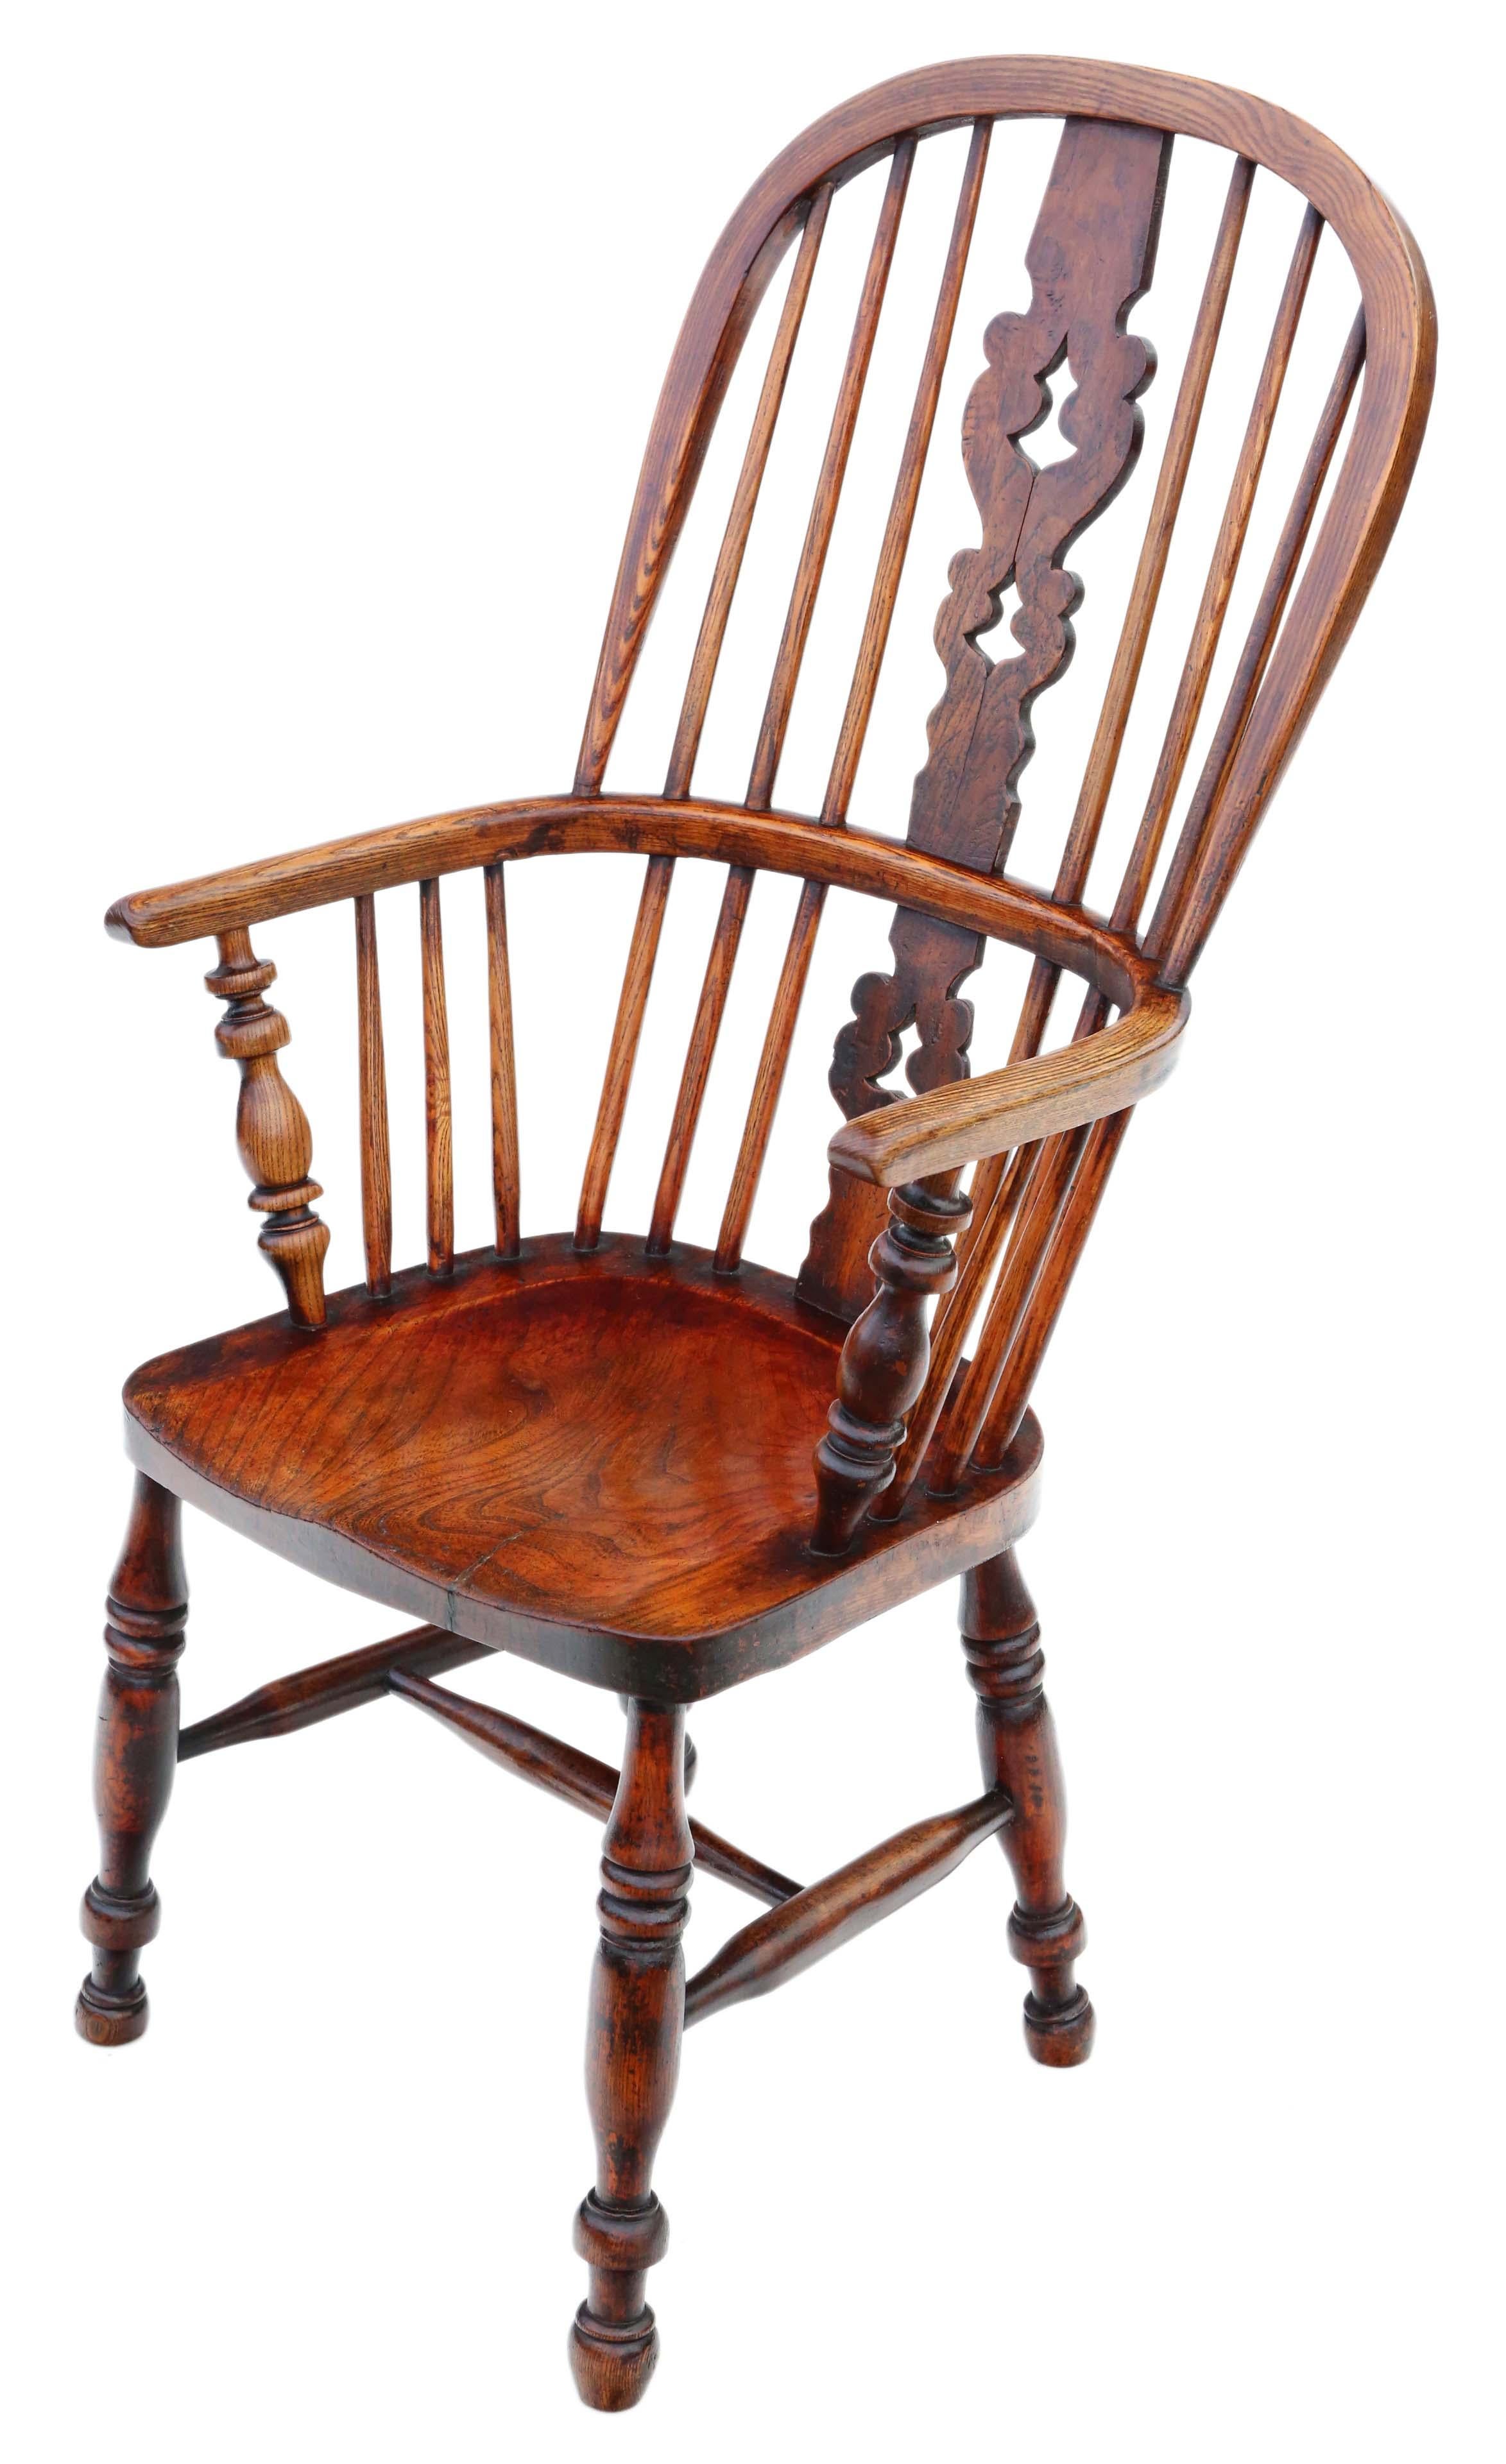 Antique fauteuil de salle à manger Victorien C1860 en frêne et orme Windsor.

Solide et résistant, sans joints lâches et sans vermoulure. Plein d'âge, de caractère et de charme. Récemment restauré à un très bon niveau.

Il serait parfait dans le